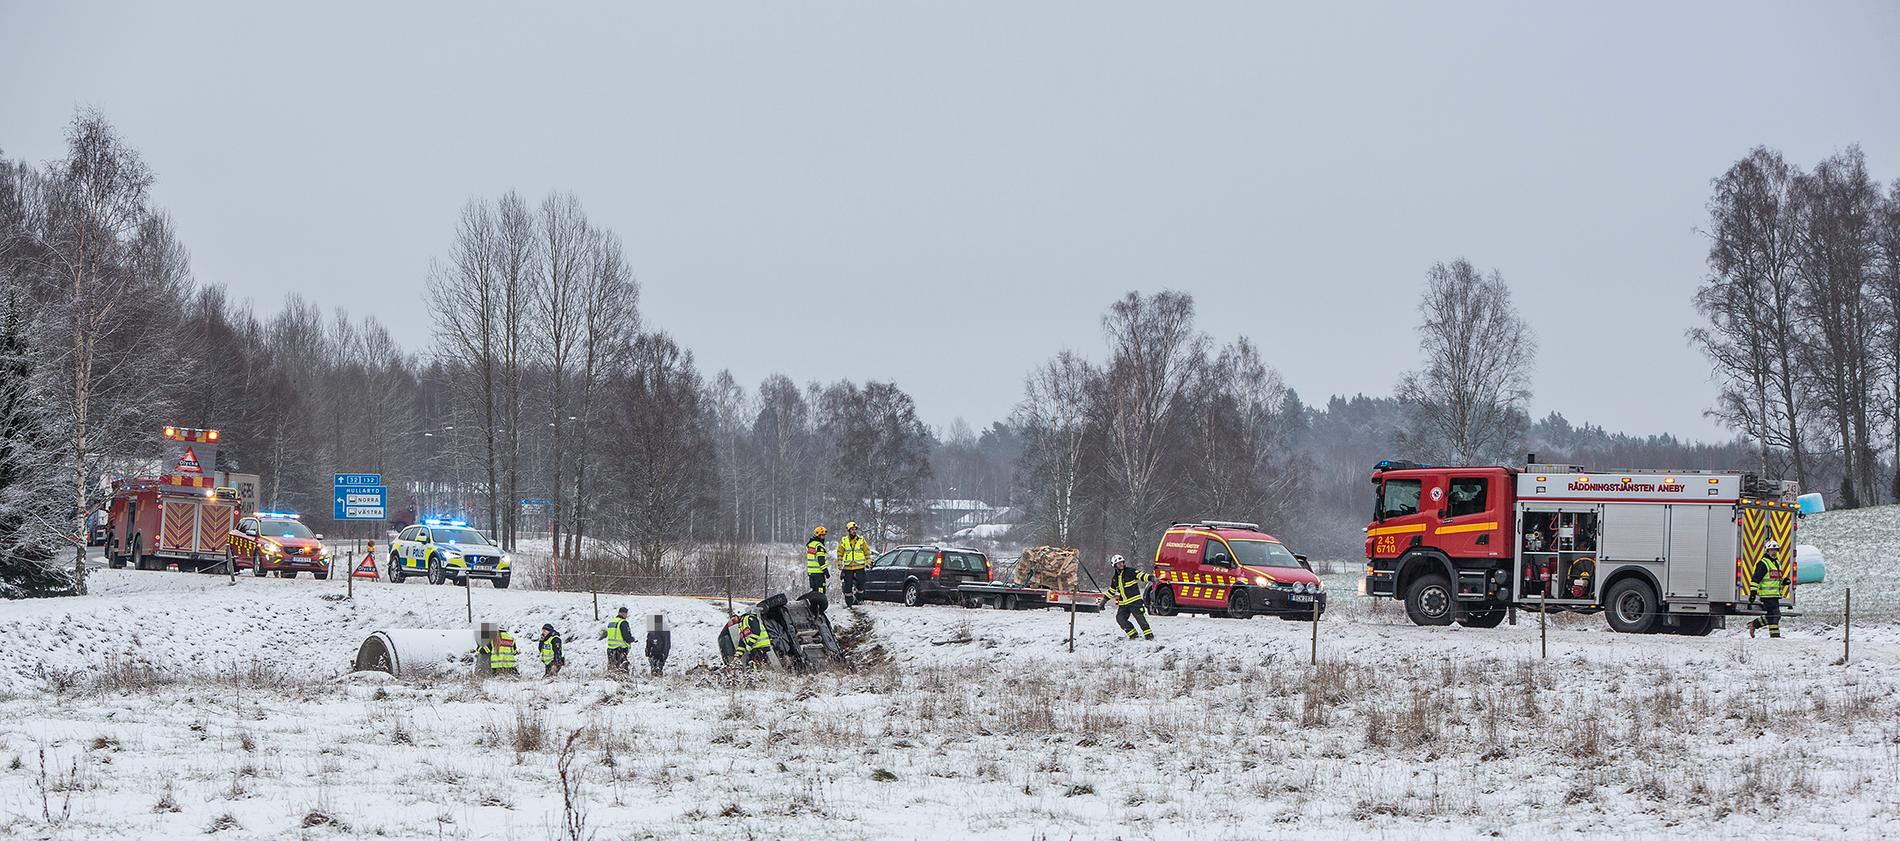 Vid 11-tiden inträffade en singelolycka på länsväg 132 i höjd med Aneby i Småland.